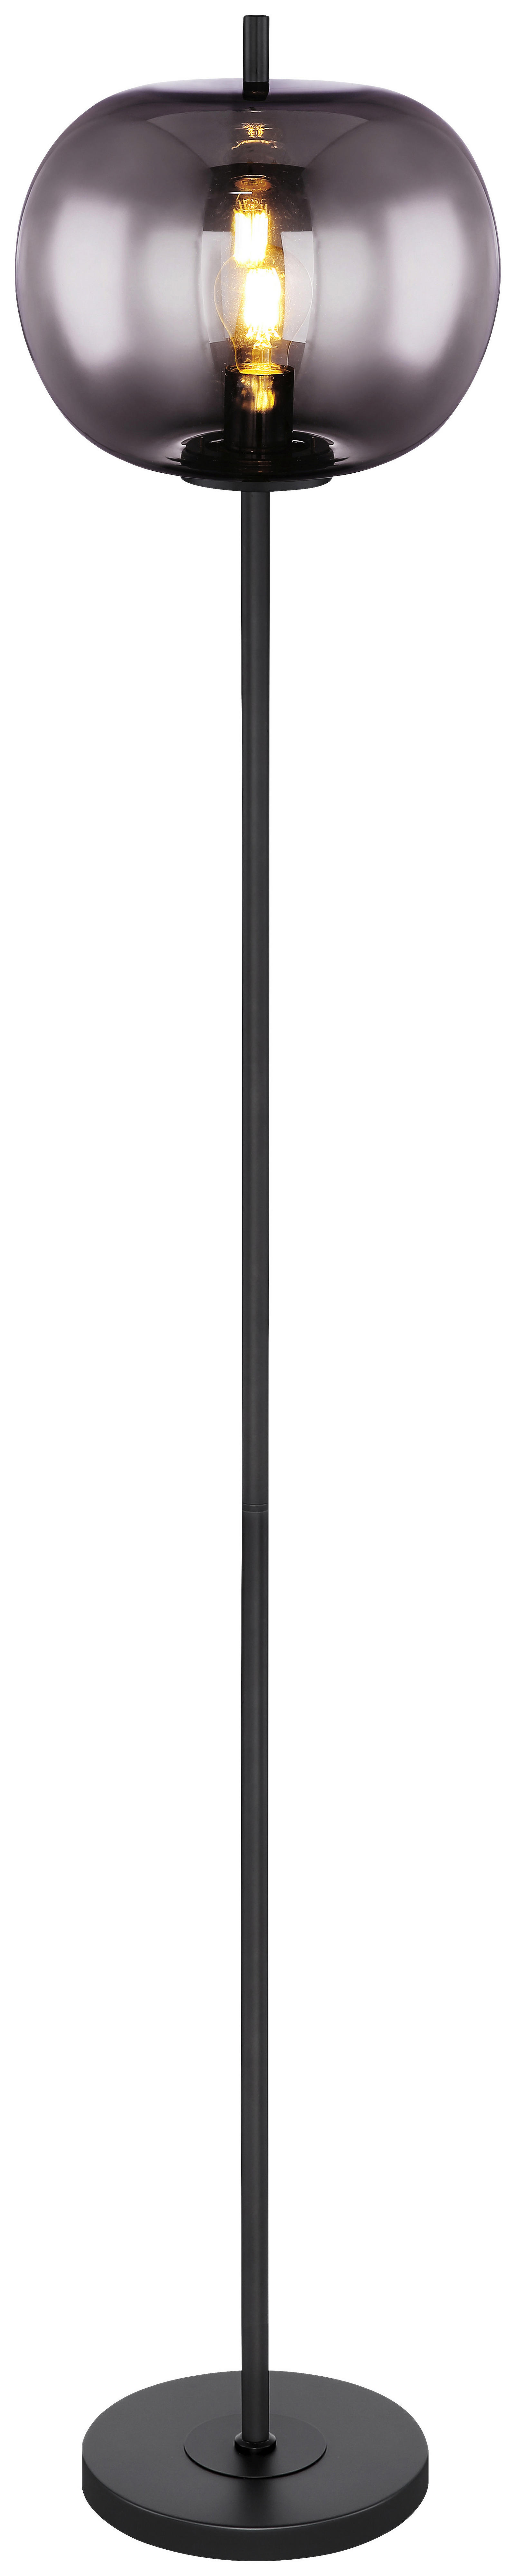 GLOBO Stehleuchte Blacky 15345S schwarz Metall Glas H/D: ca. 160x30 cm E27 1 Brennstellen Blacky - schwarz (30,00/160,00cm)